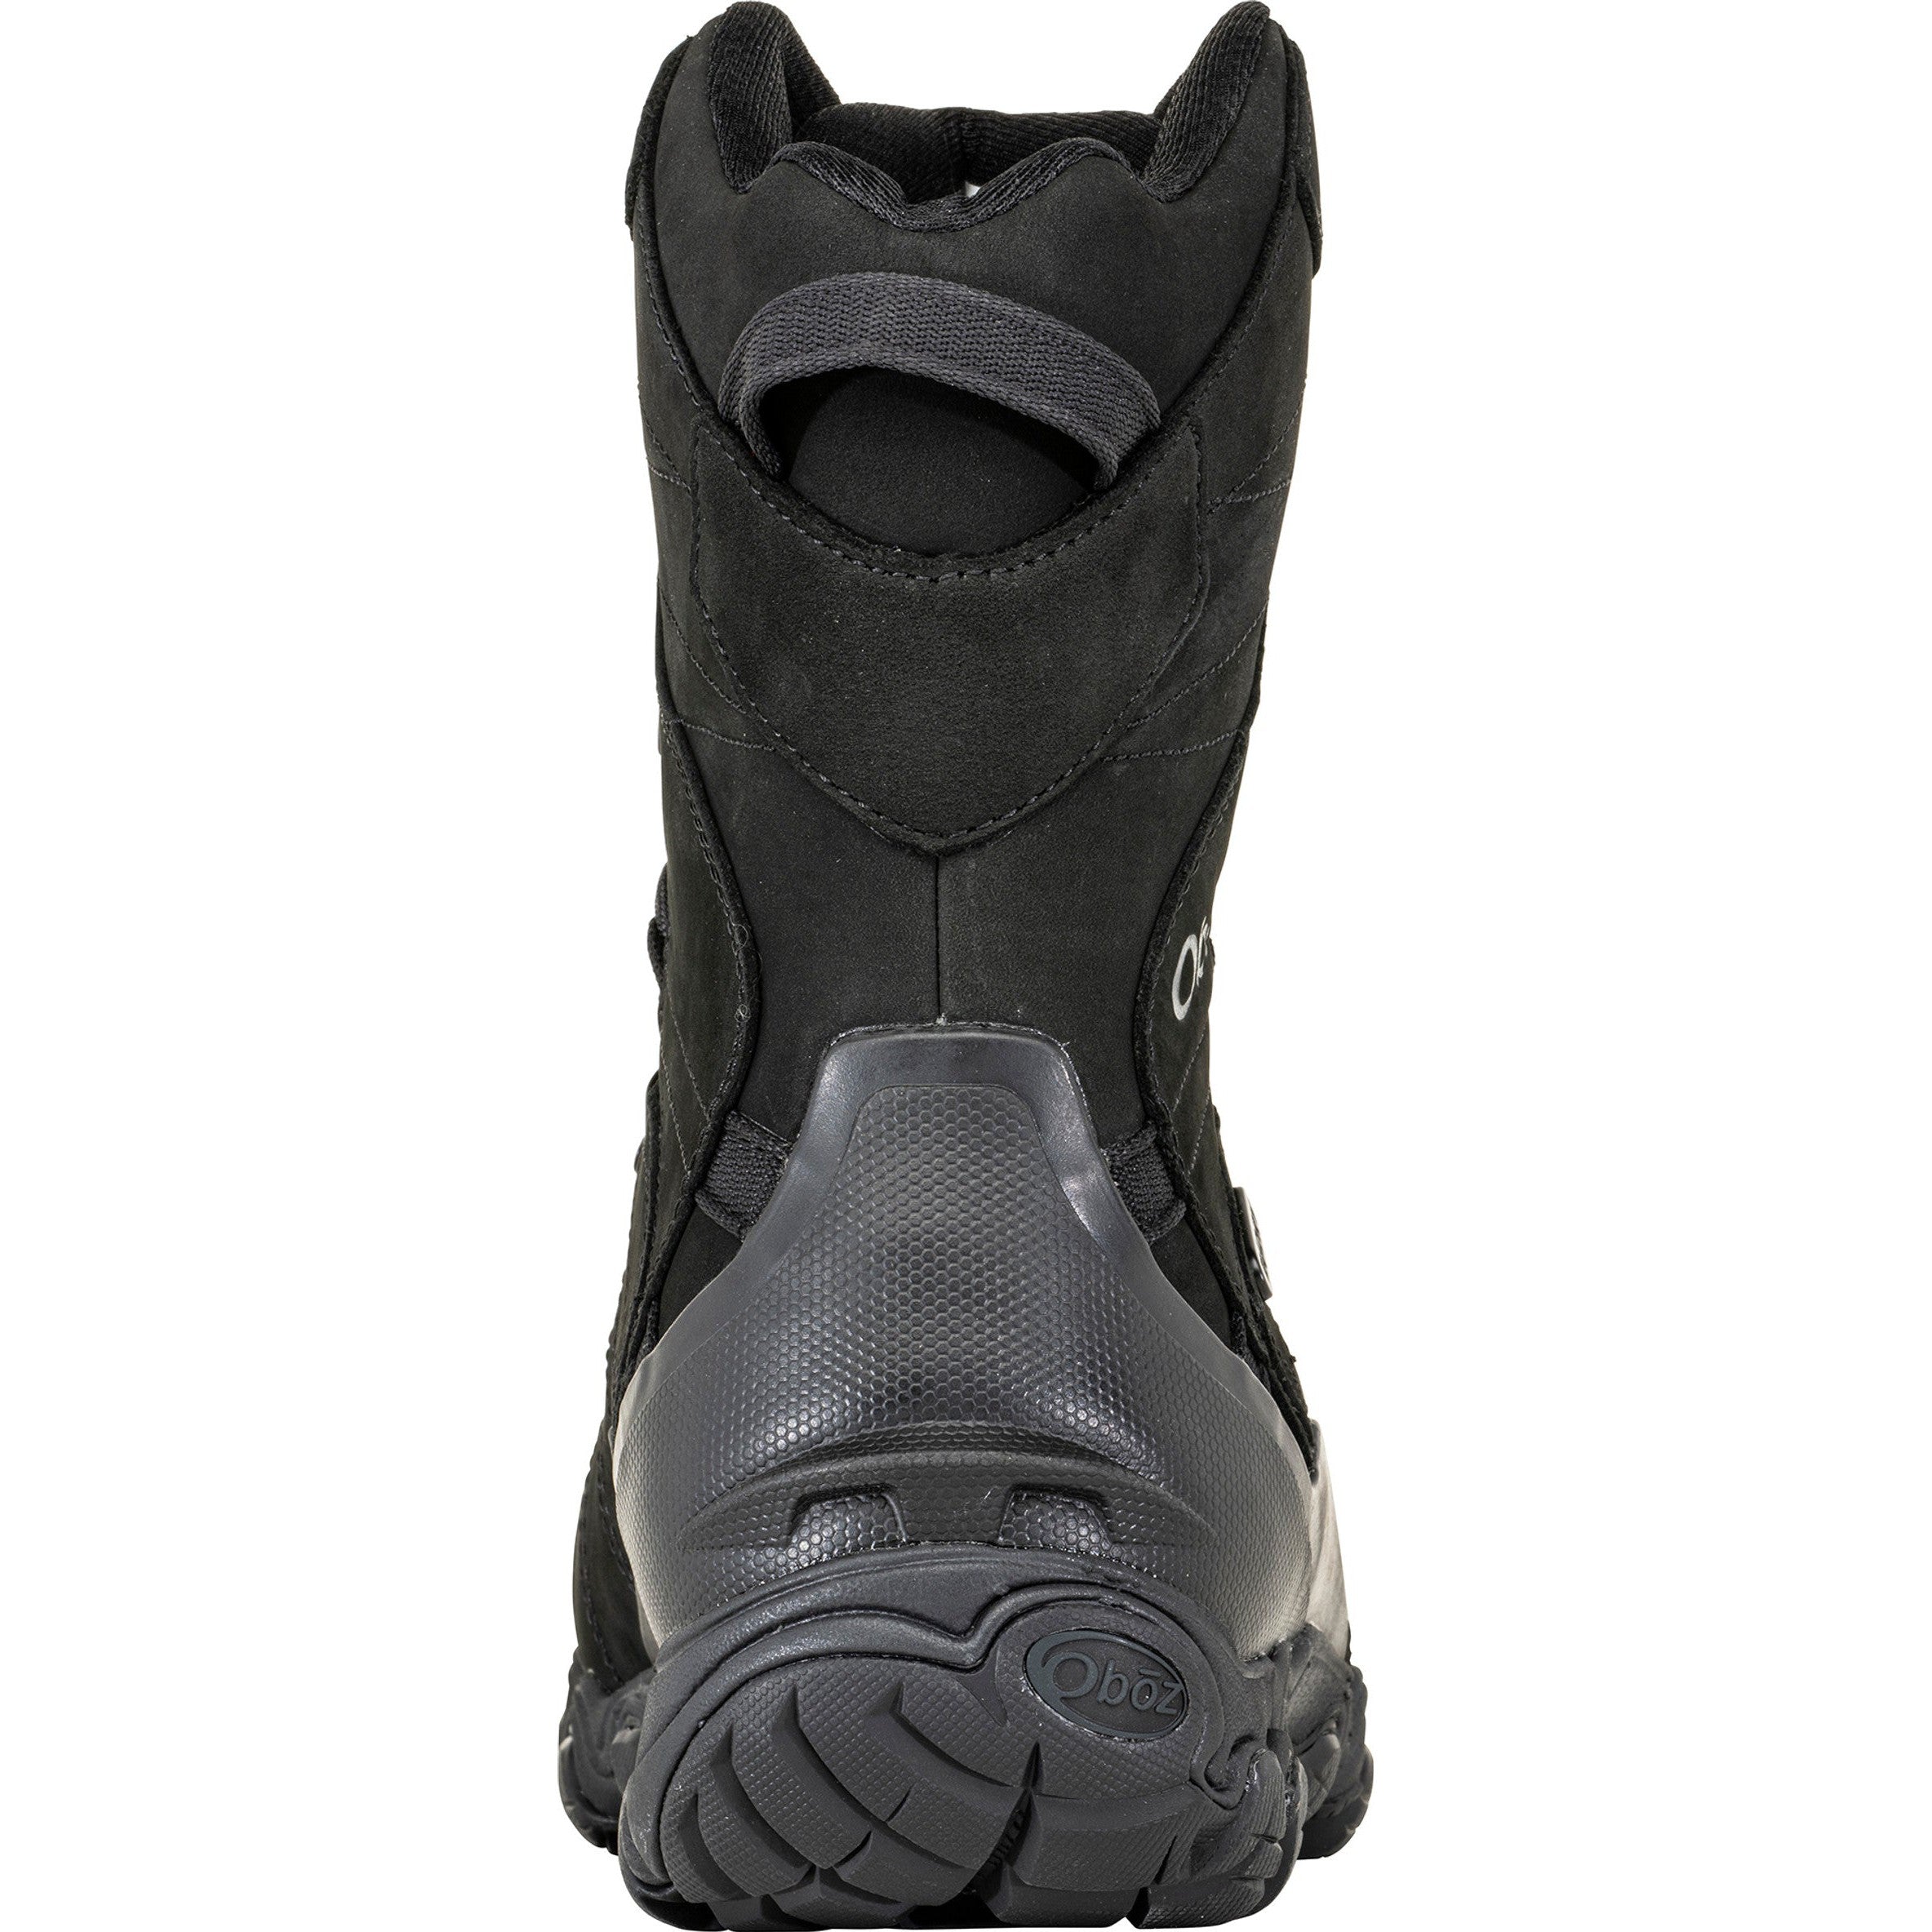 Oboz Men's Bridger 10" Insulated Waterproof Boots